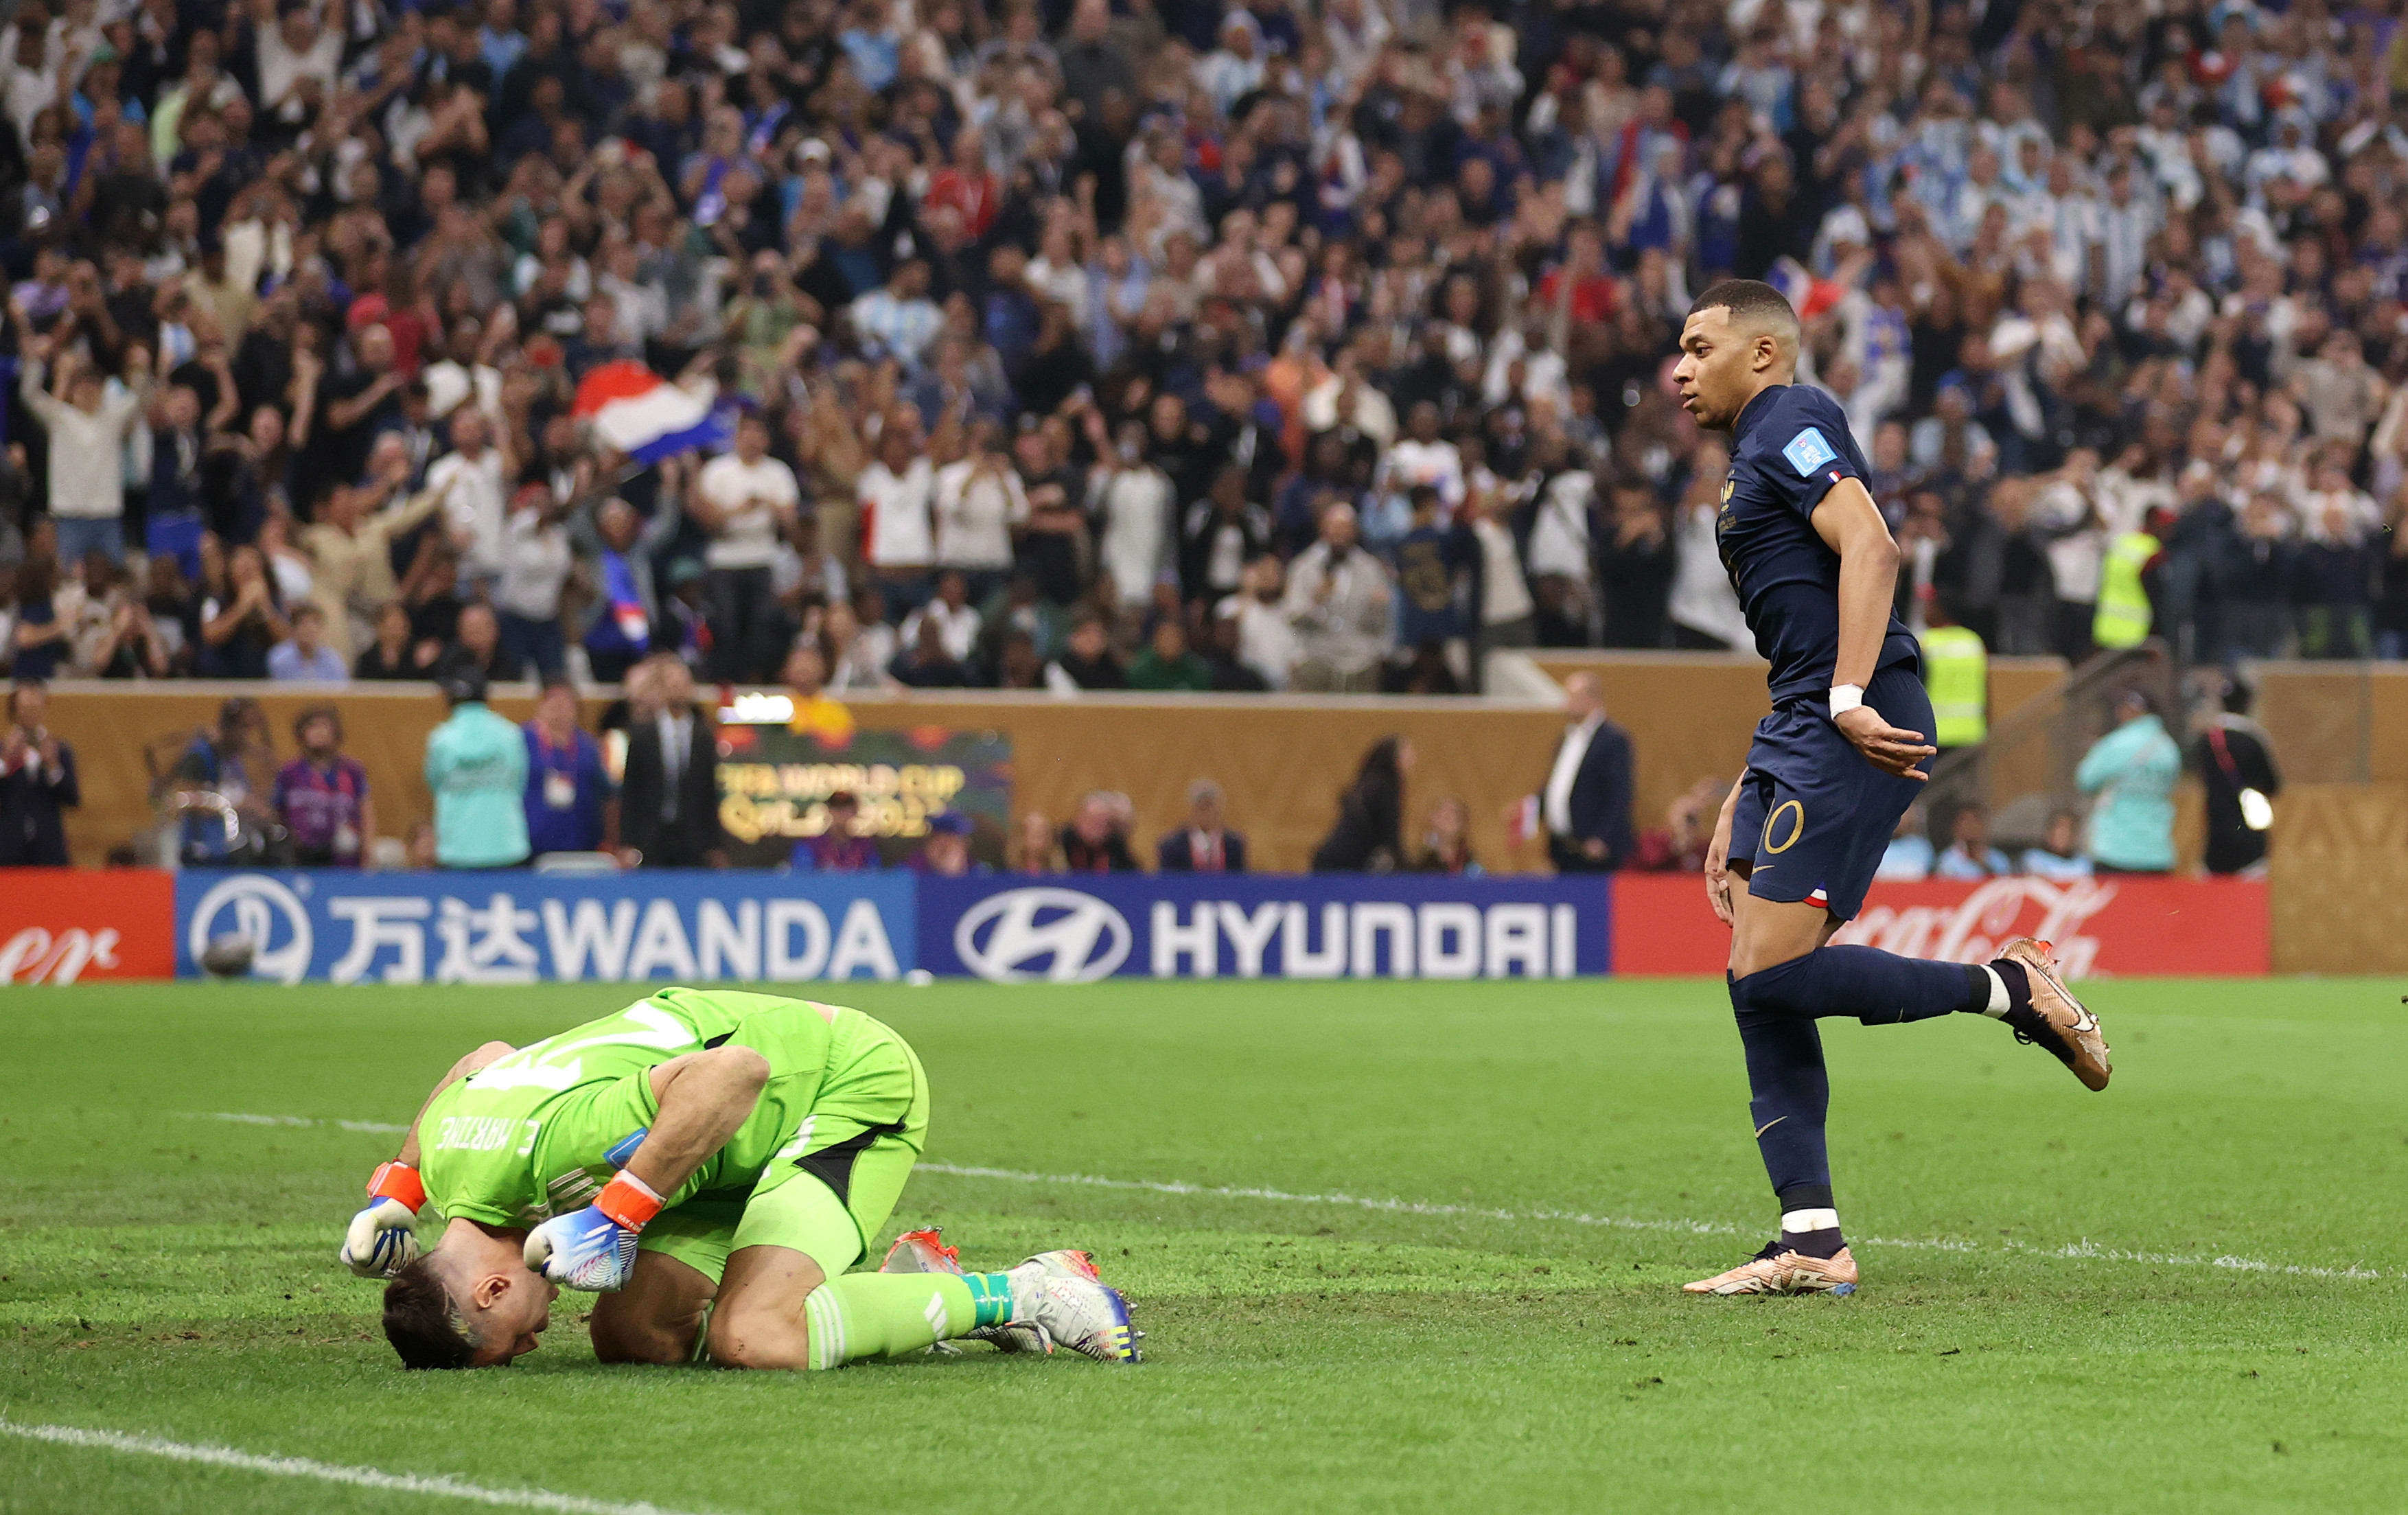 גמר מונדיאל 2022: חלוץ נבחרת צרפת קיליאן אמבפה לצד שוער נבחרת ארגנטינה אמיליאנו מרטינס